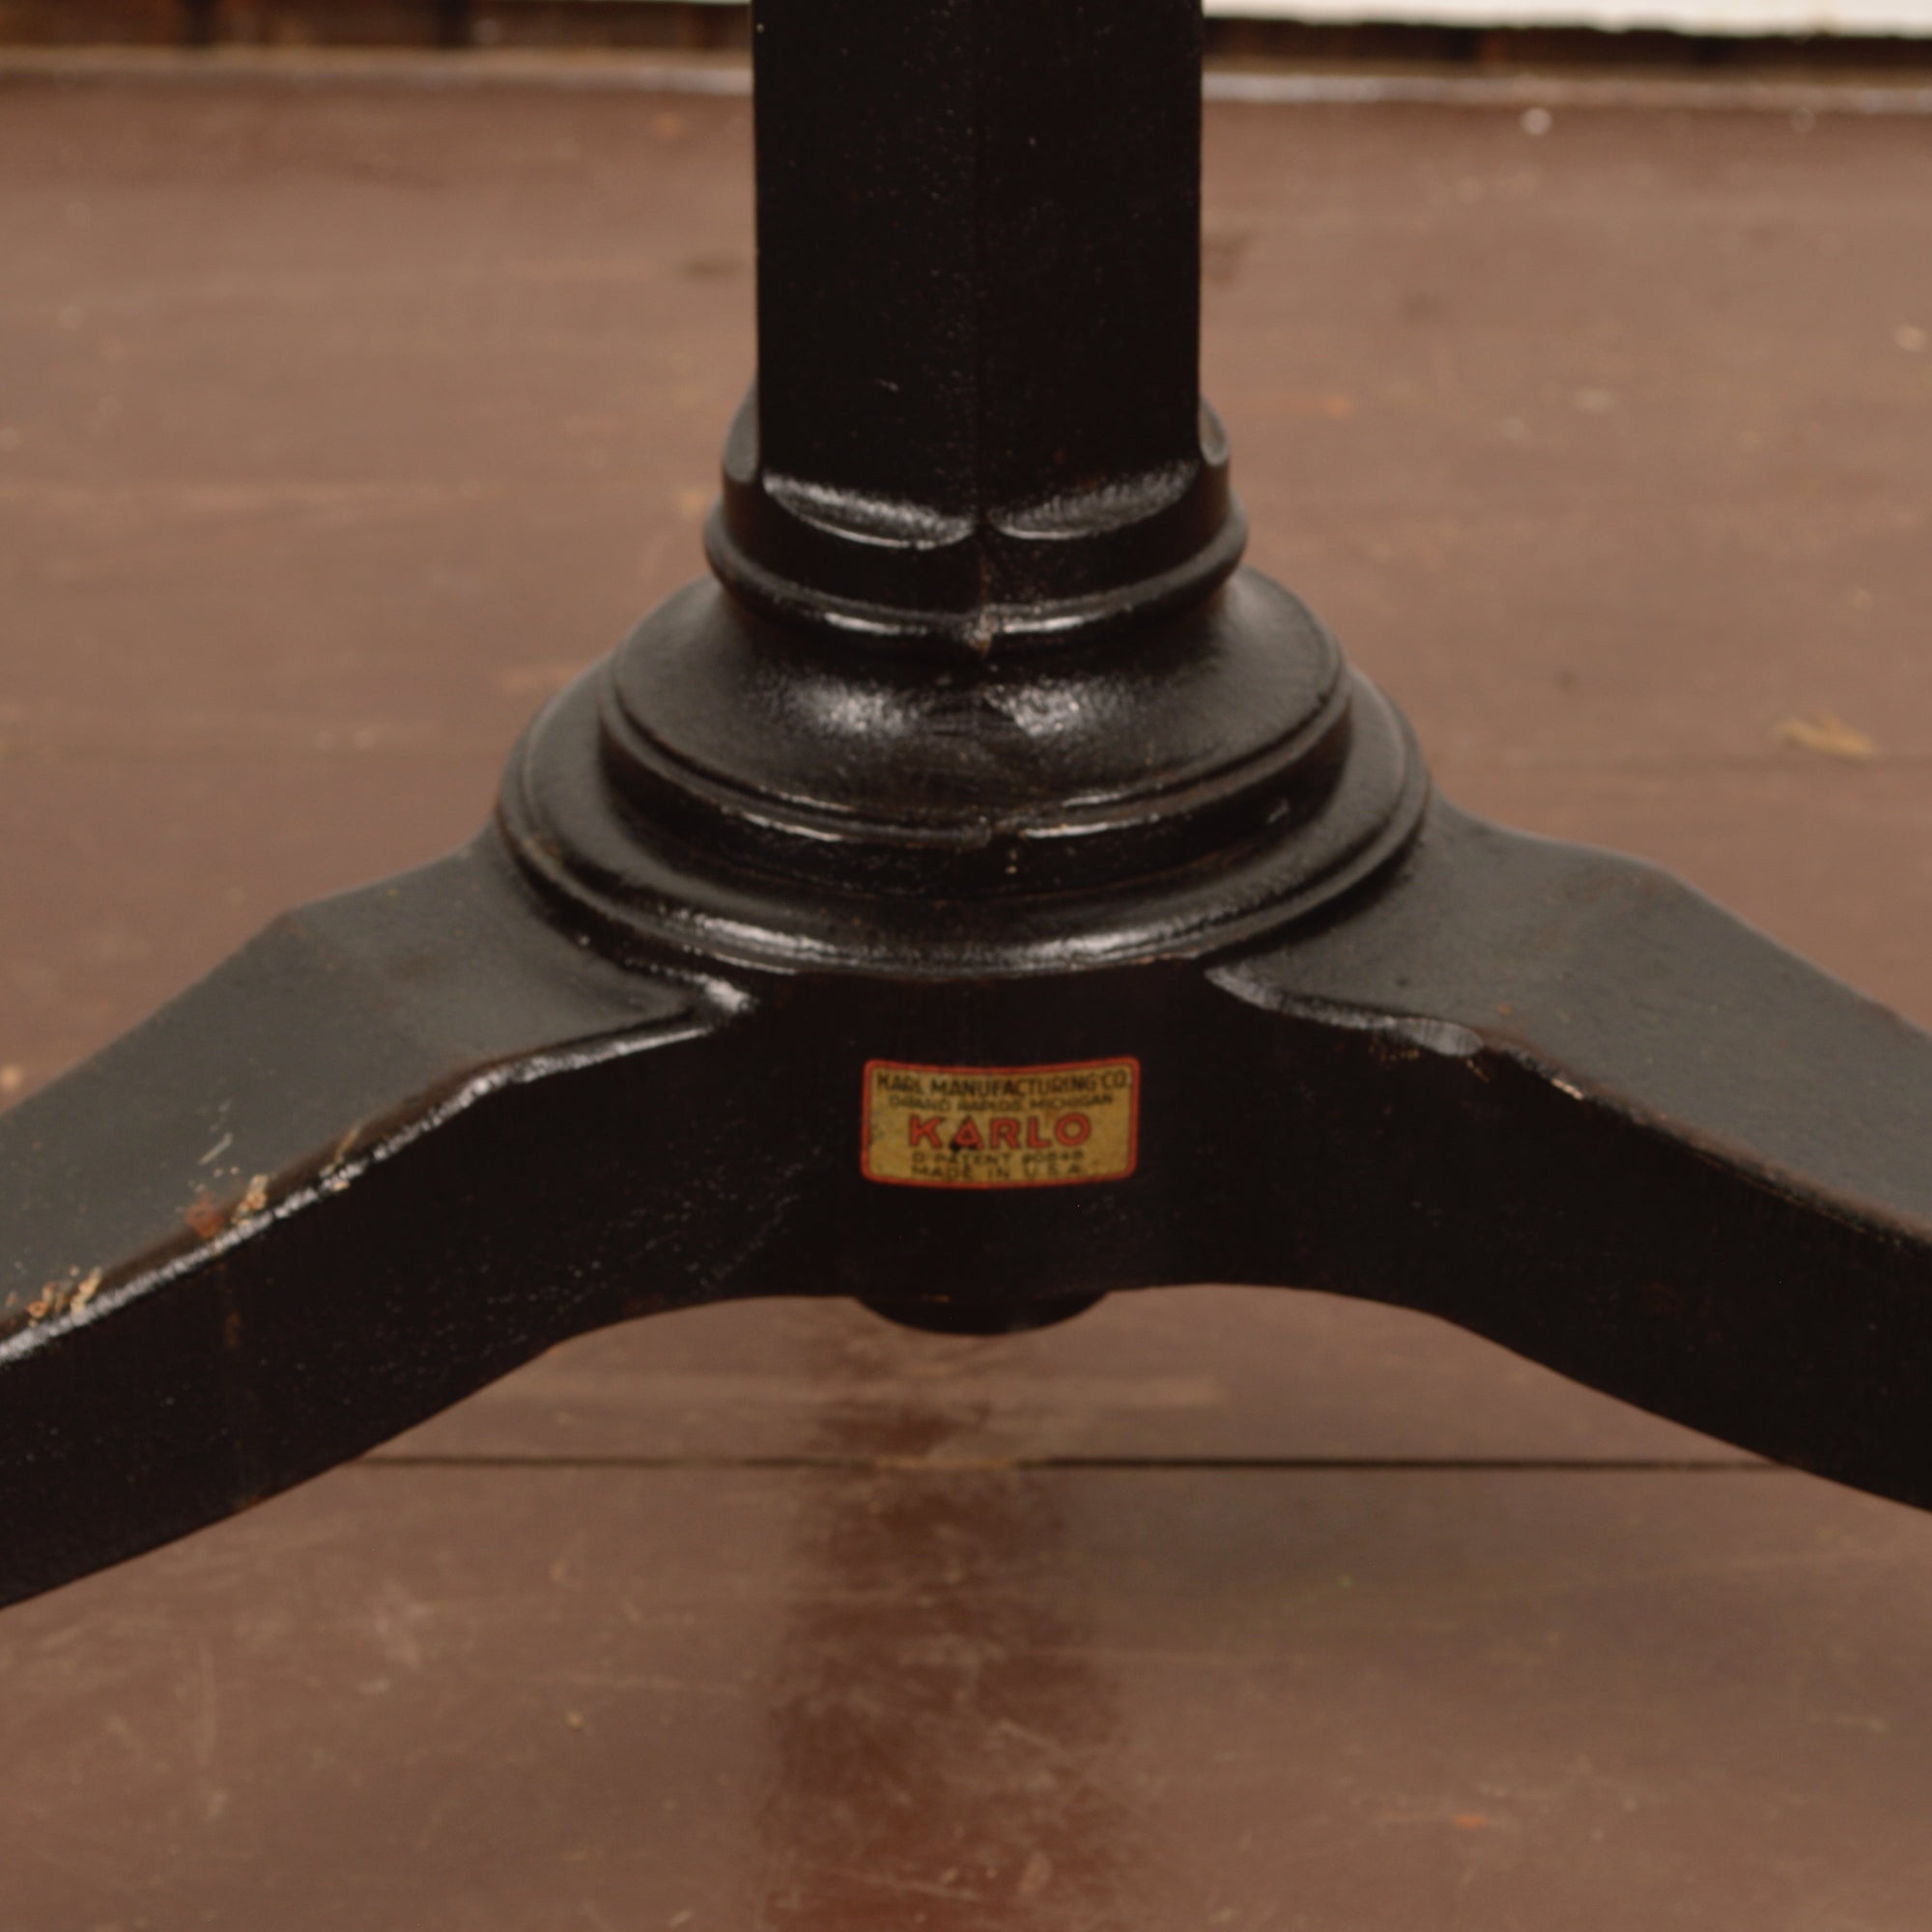 Karlo Cast Iron Adjustable Table Salvage-Garden